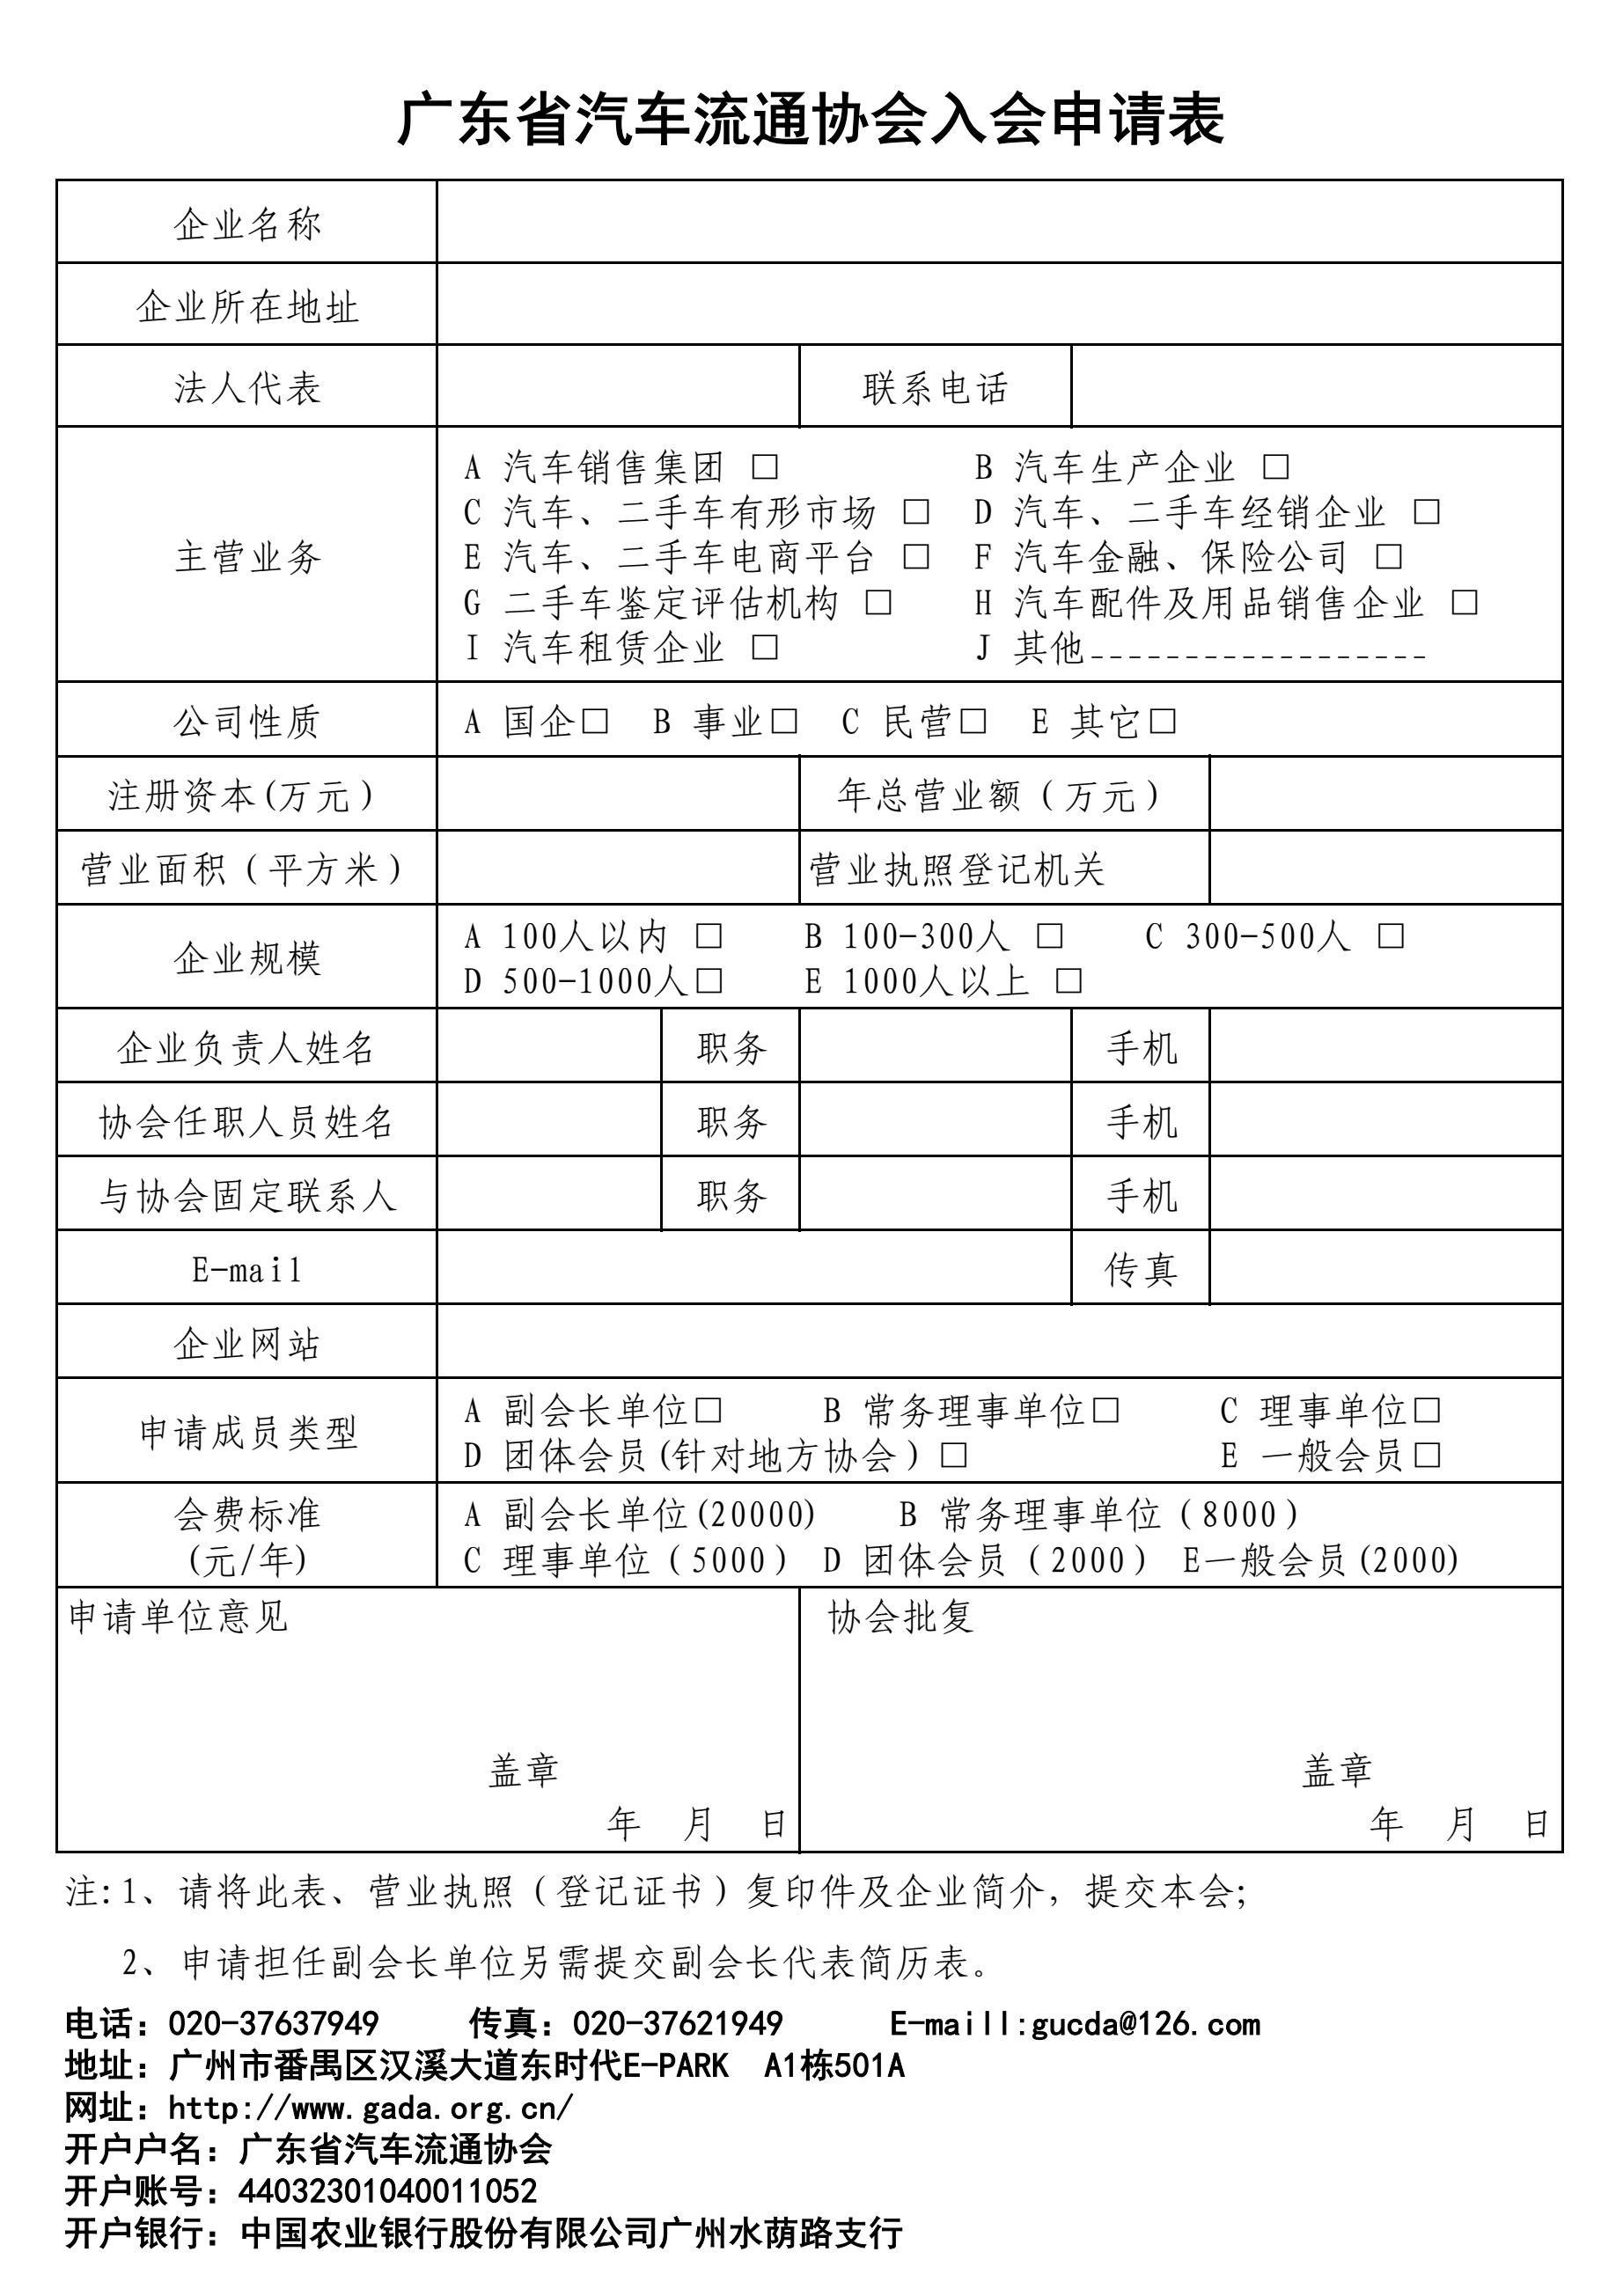 广东省汽车流通协会入会申请表14